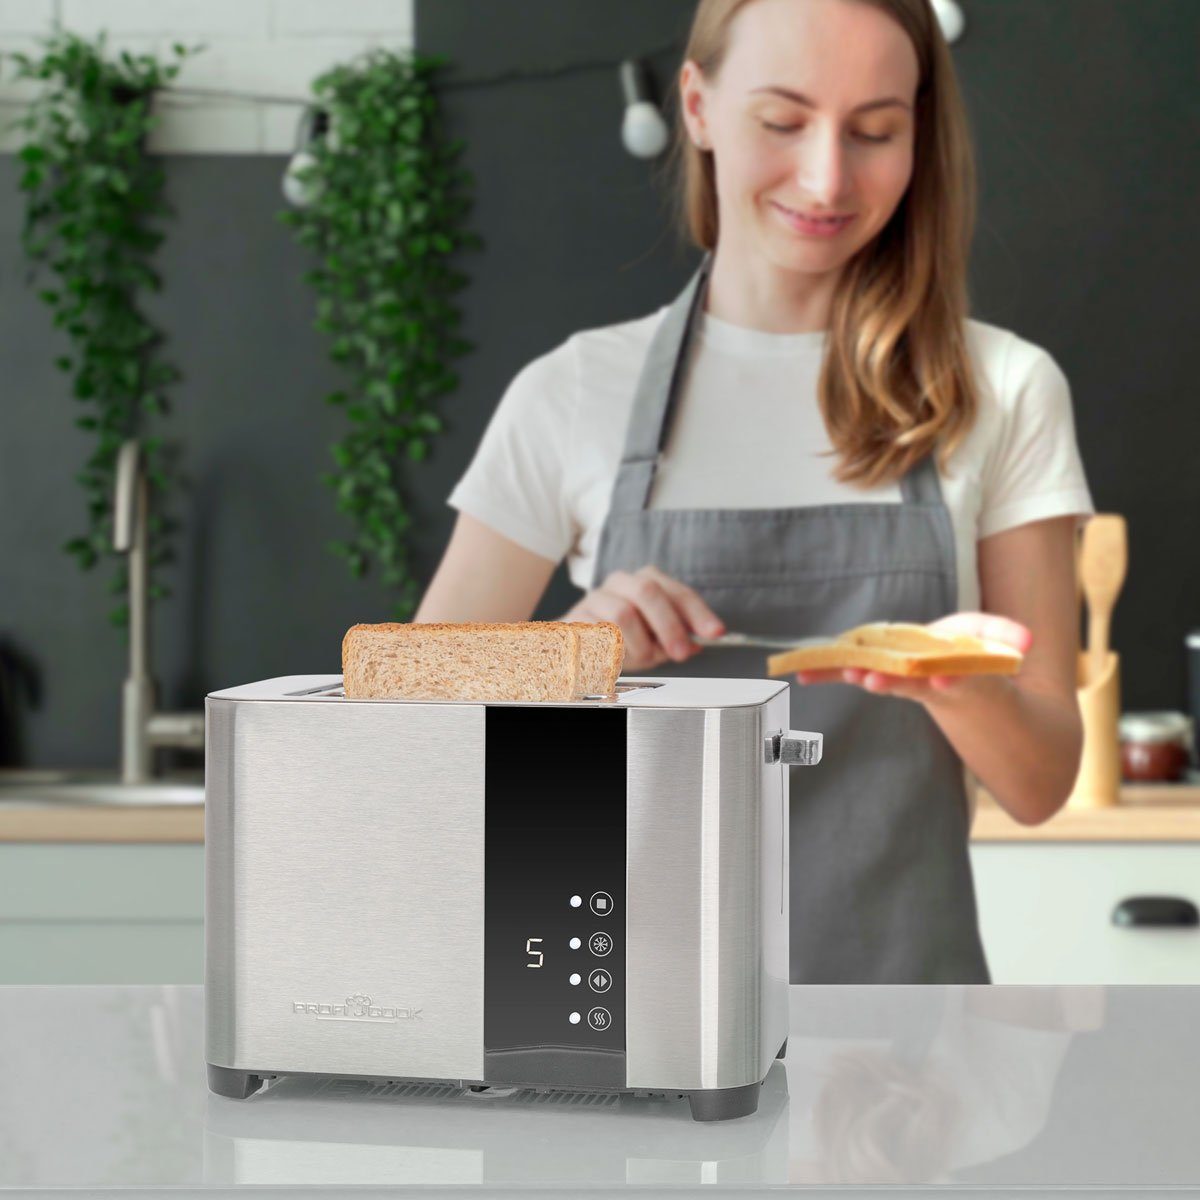 Senor Edelstahl Scheiben, 1250, PC-TA Touch-Bedienung, ProfiCook mit Toaster Toaster 2